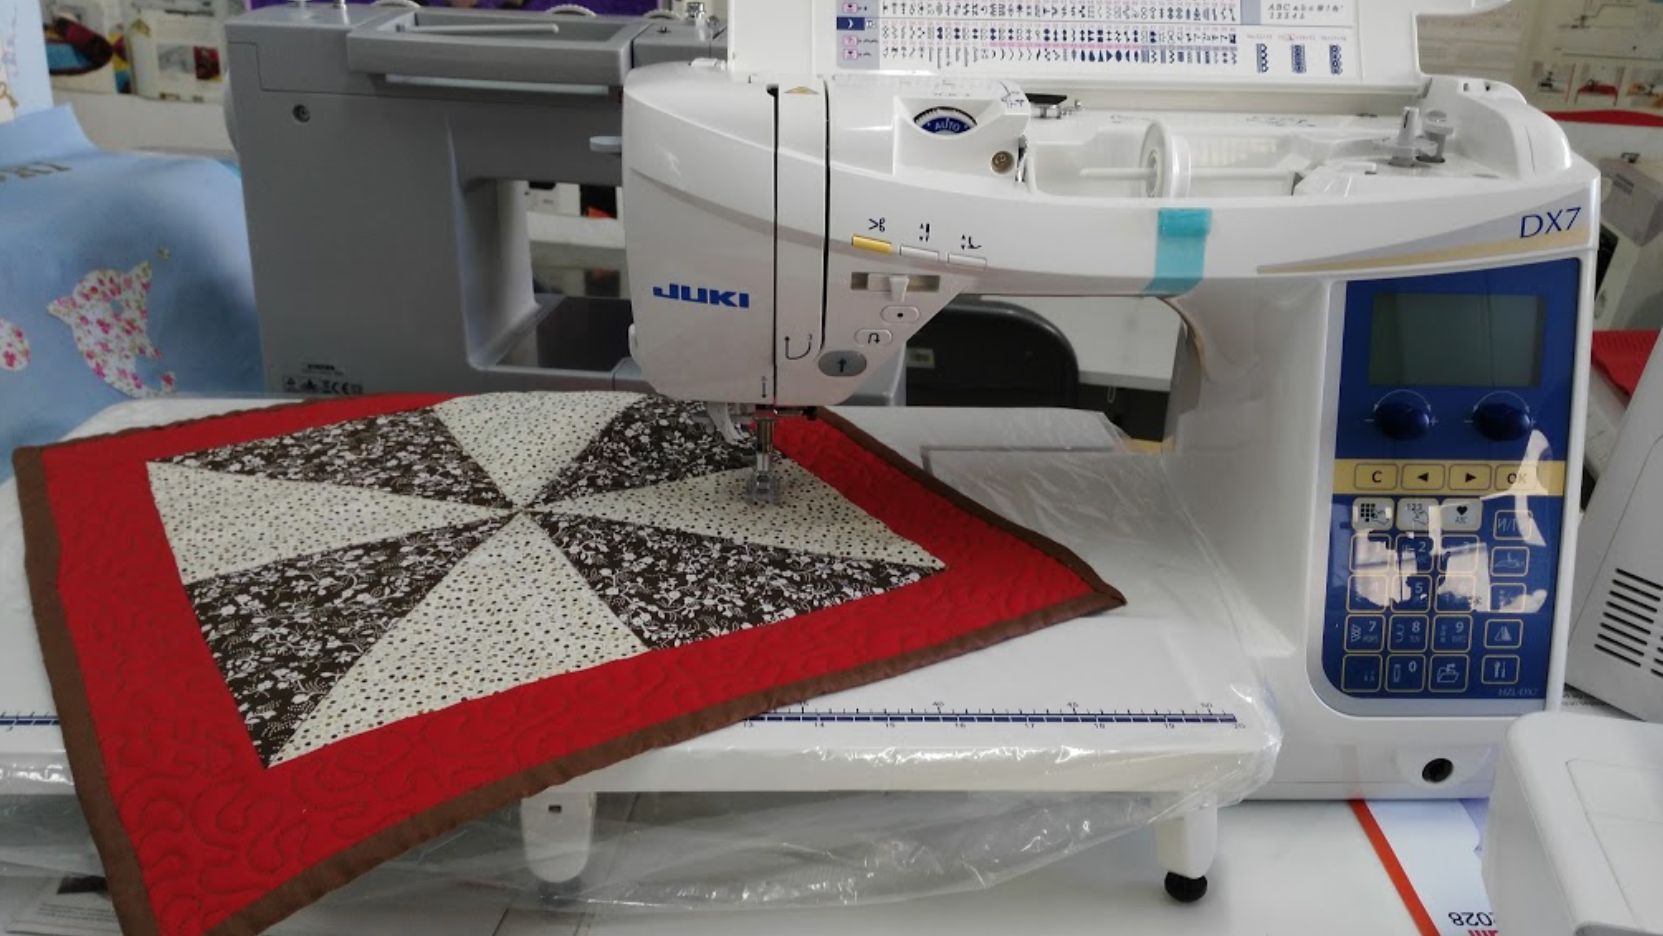 Venta multimarca de máquinas de coser en Madrid